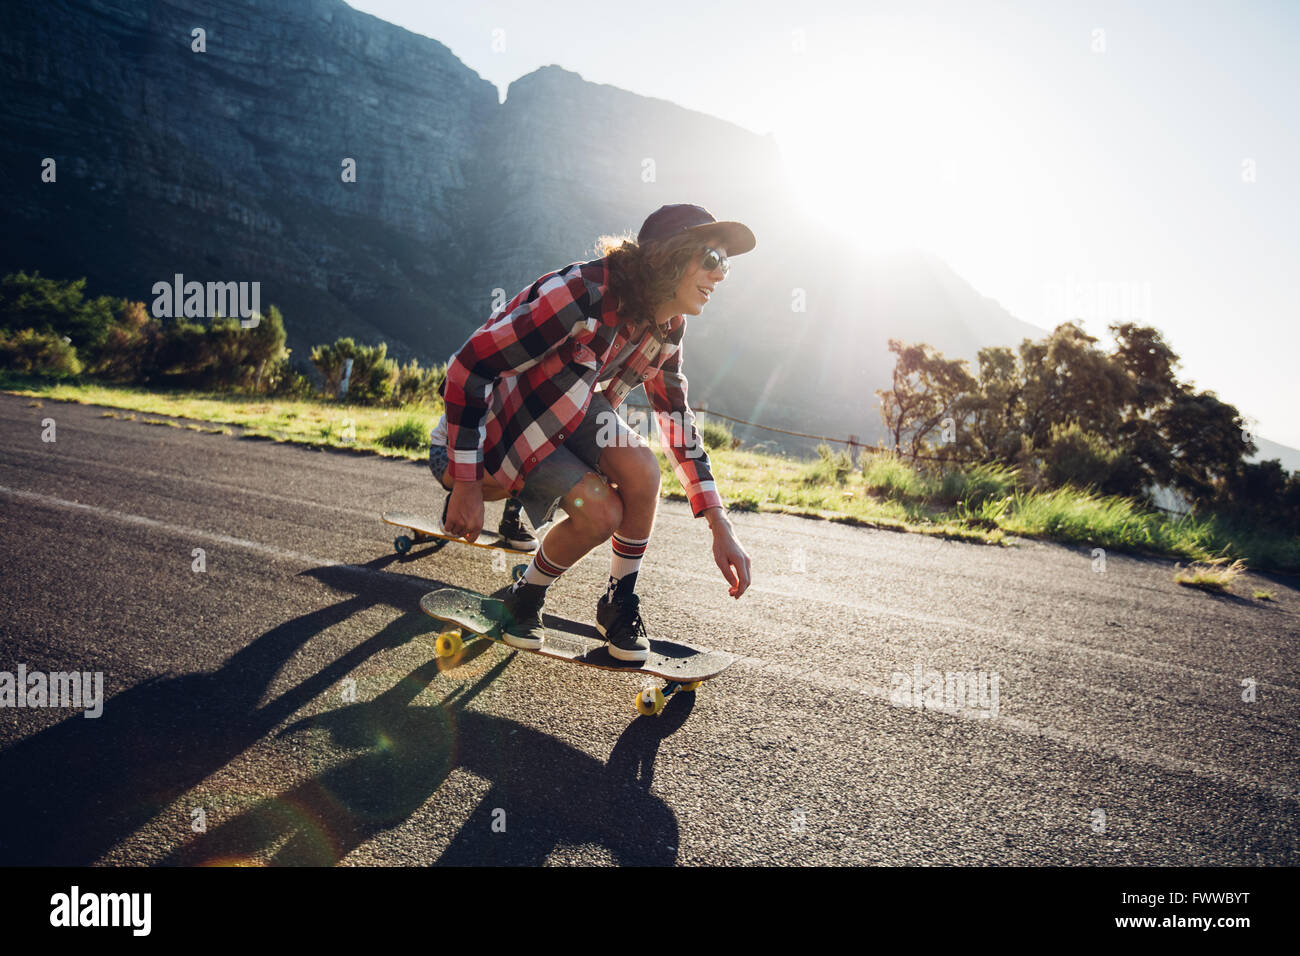 Giovane uomo surf all'aperto sulla strada di campagna. Per la corsa su skateboard maschio in una giornata di sole. Foto Stock